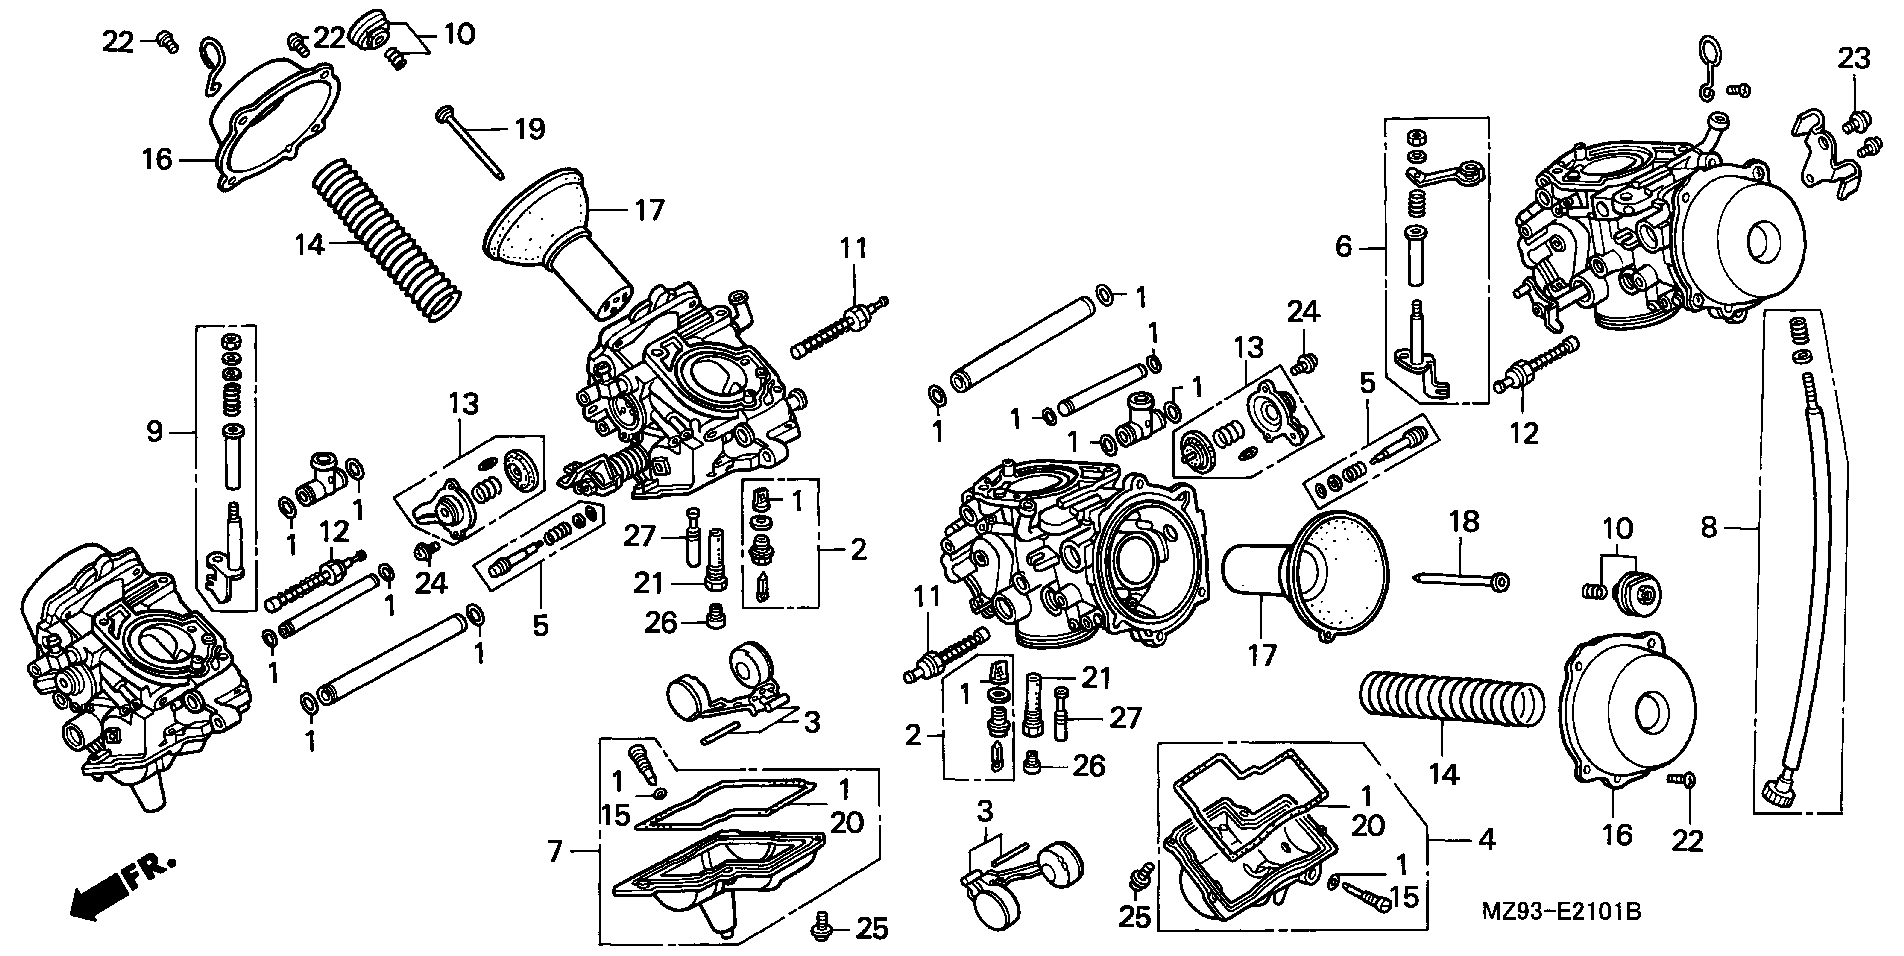 Parts fiche Carburettor Components ST1100